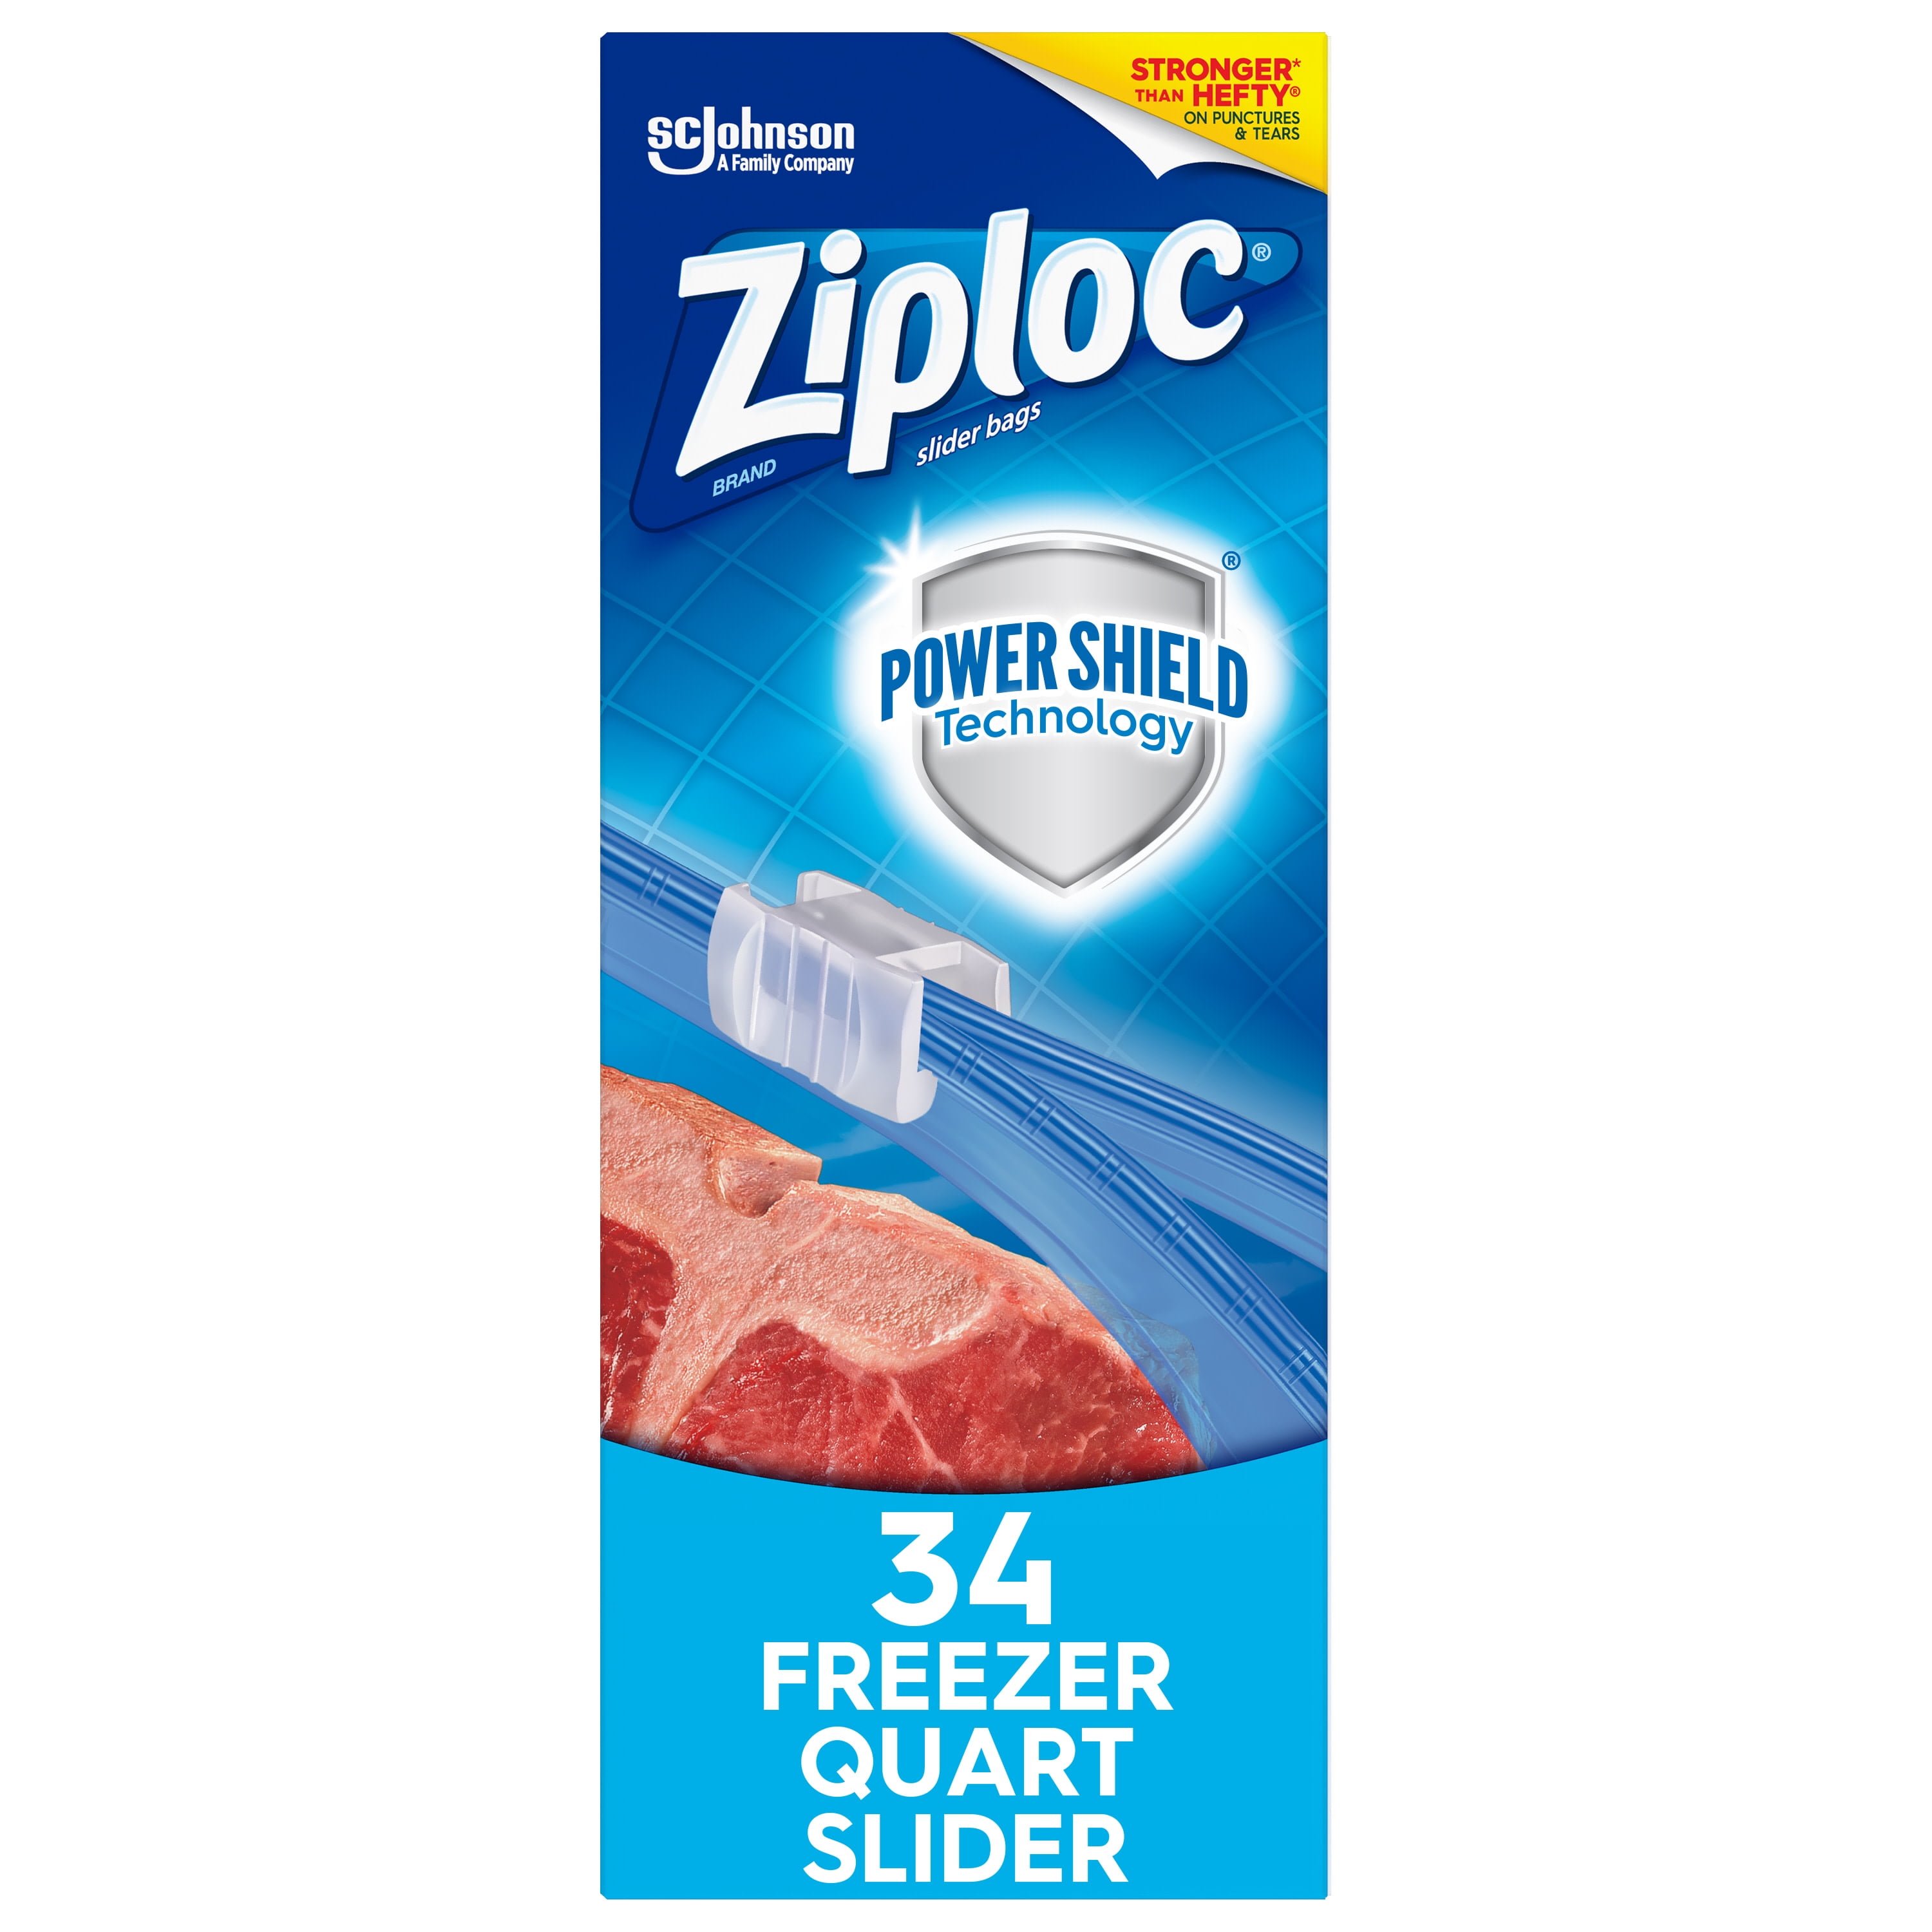 Ziploc Freezer Bags 3 Pks of 38 Bags each pack easy open Tabs